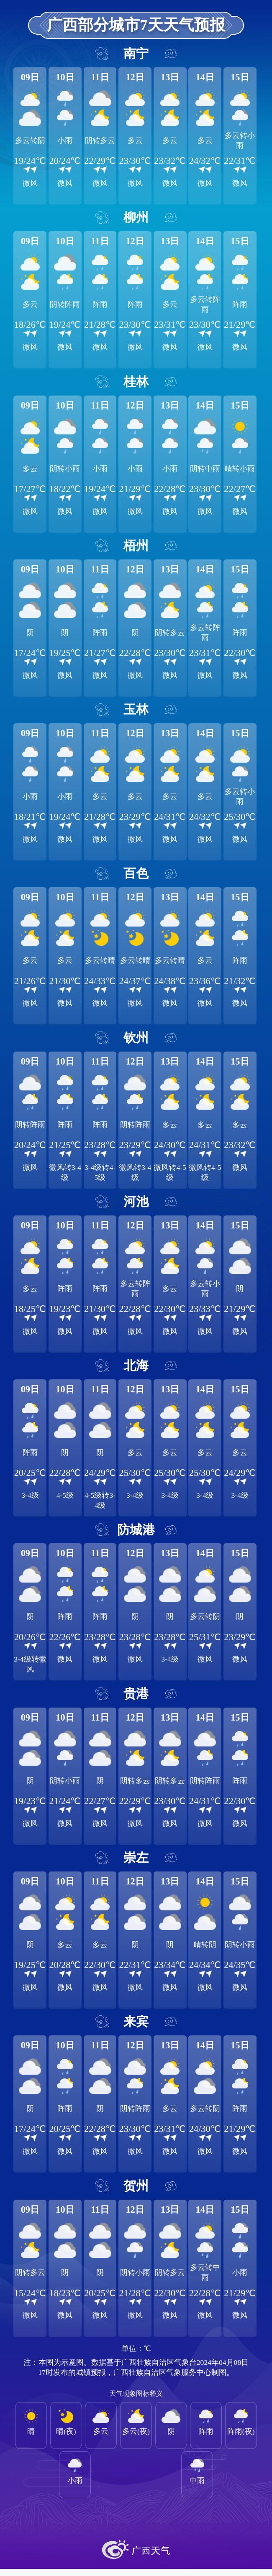 局地最高温升至37℃!广西三月三假期天气